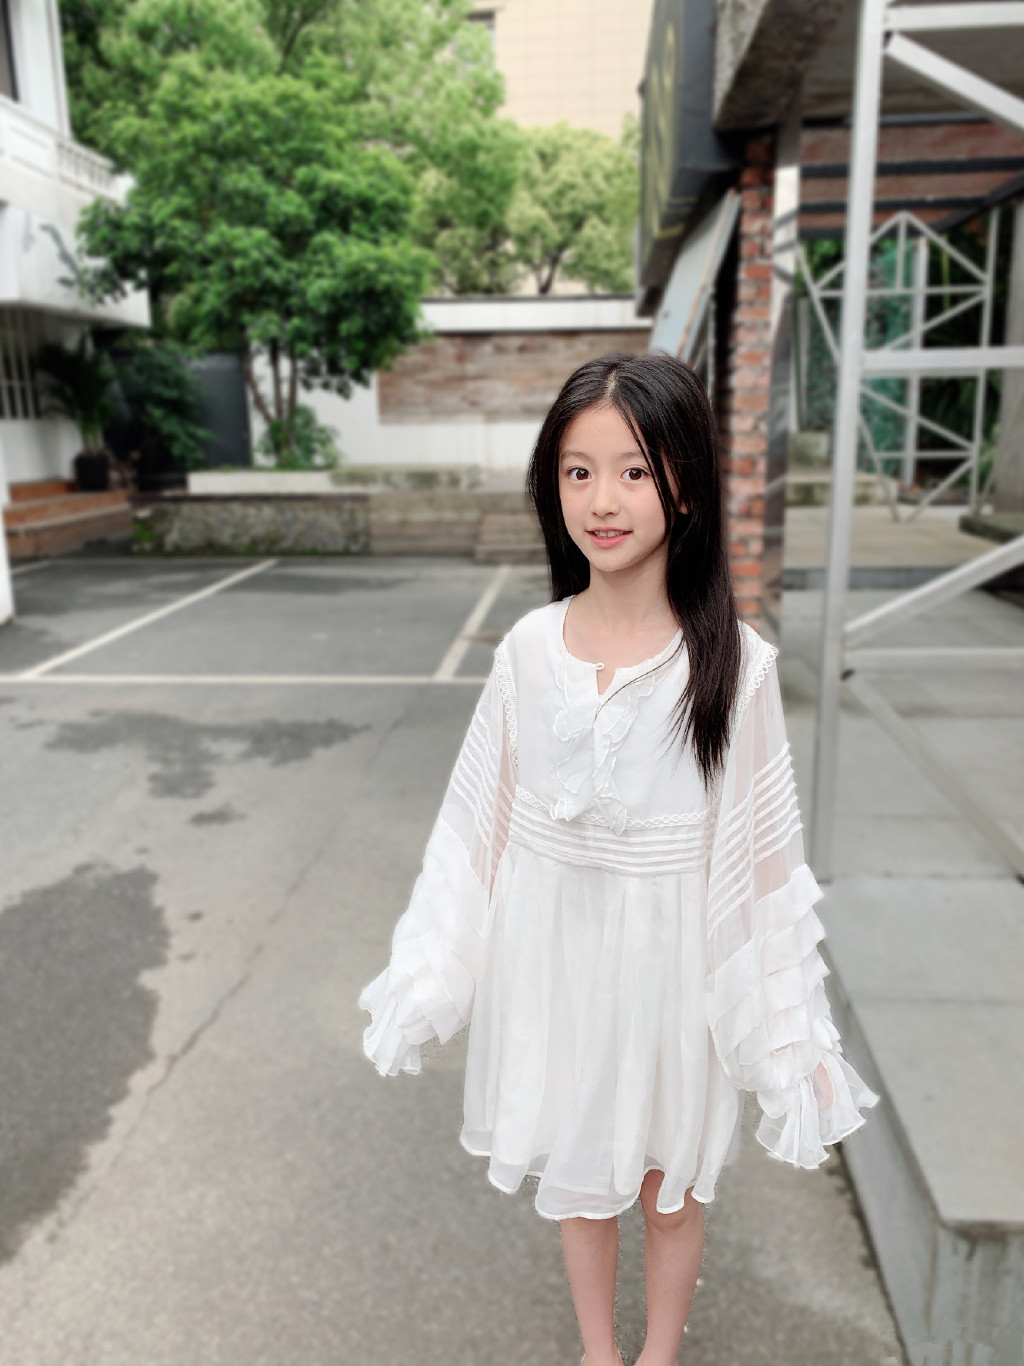 因为"逆天颜值"被禁止整容的童模裴佳欣,穿学院风套装美成公主